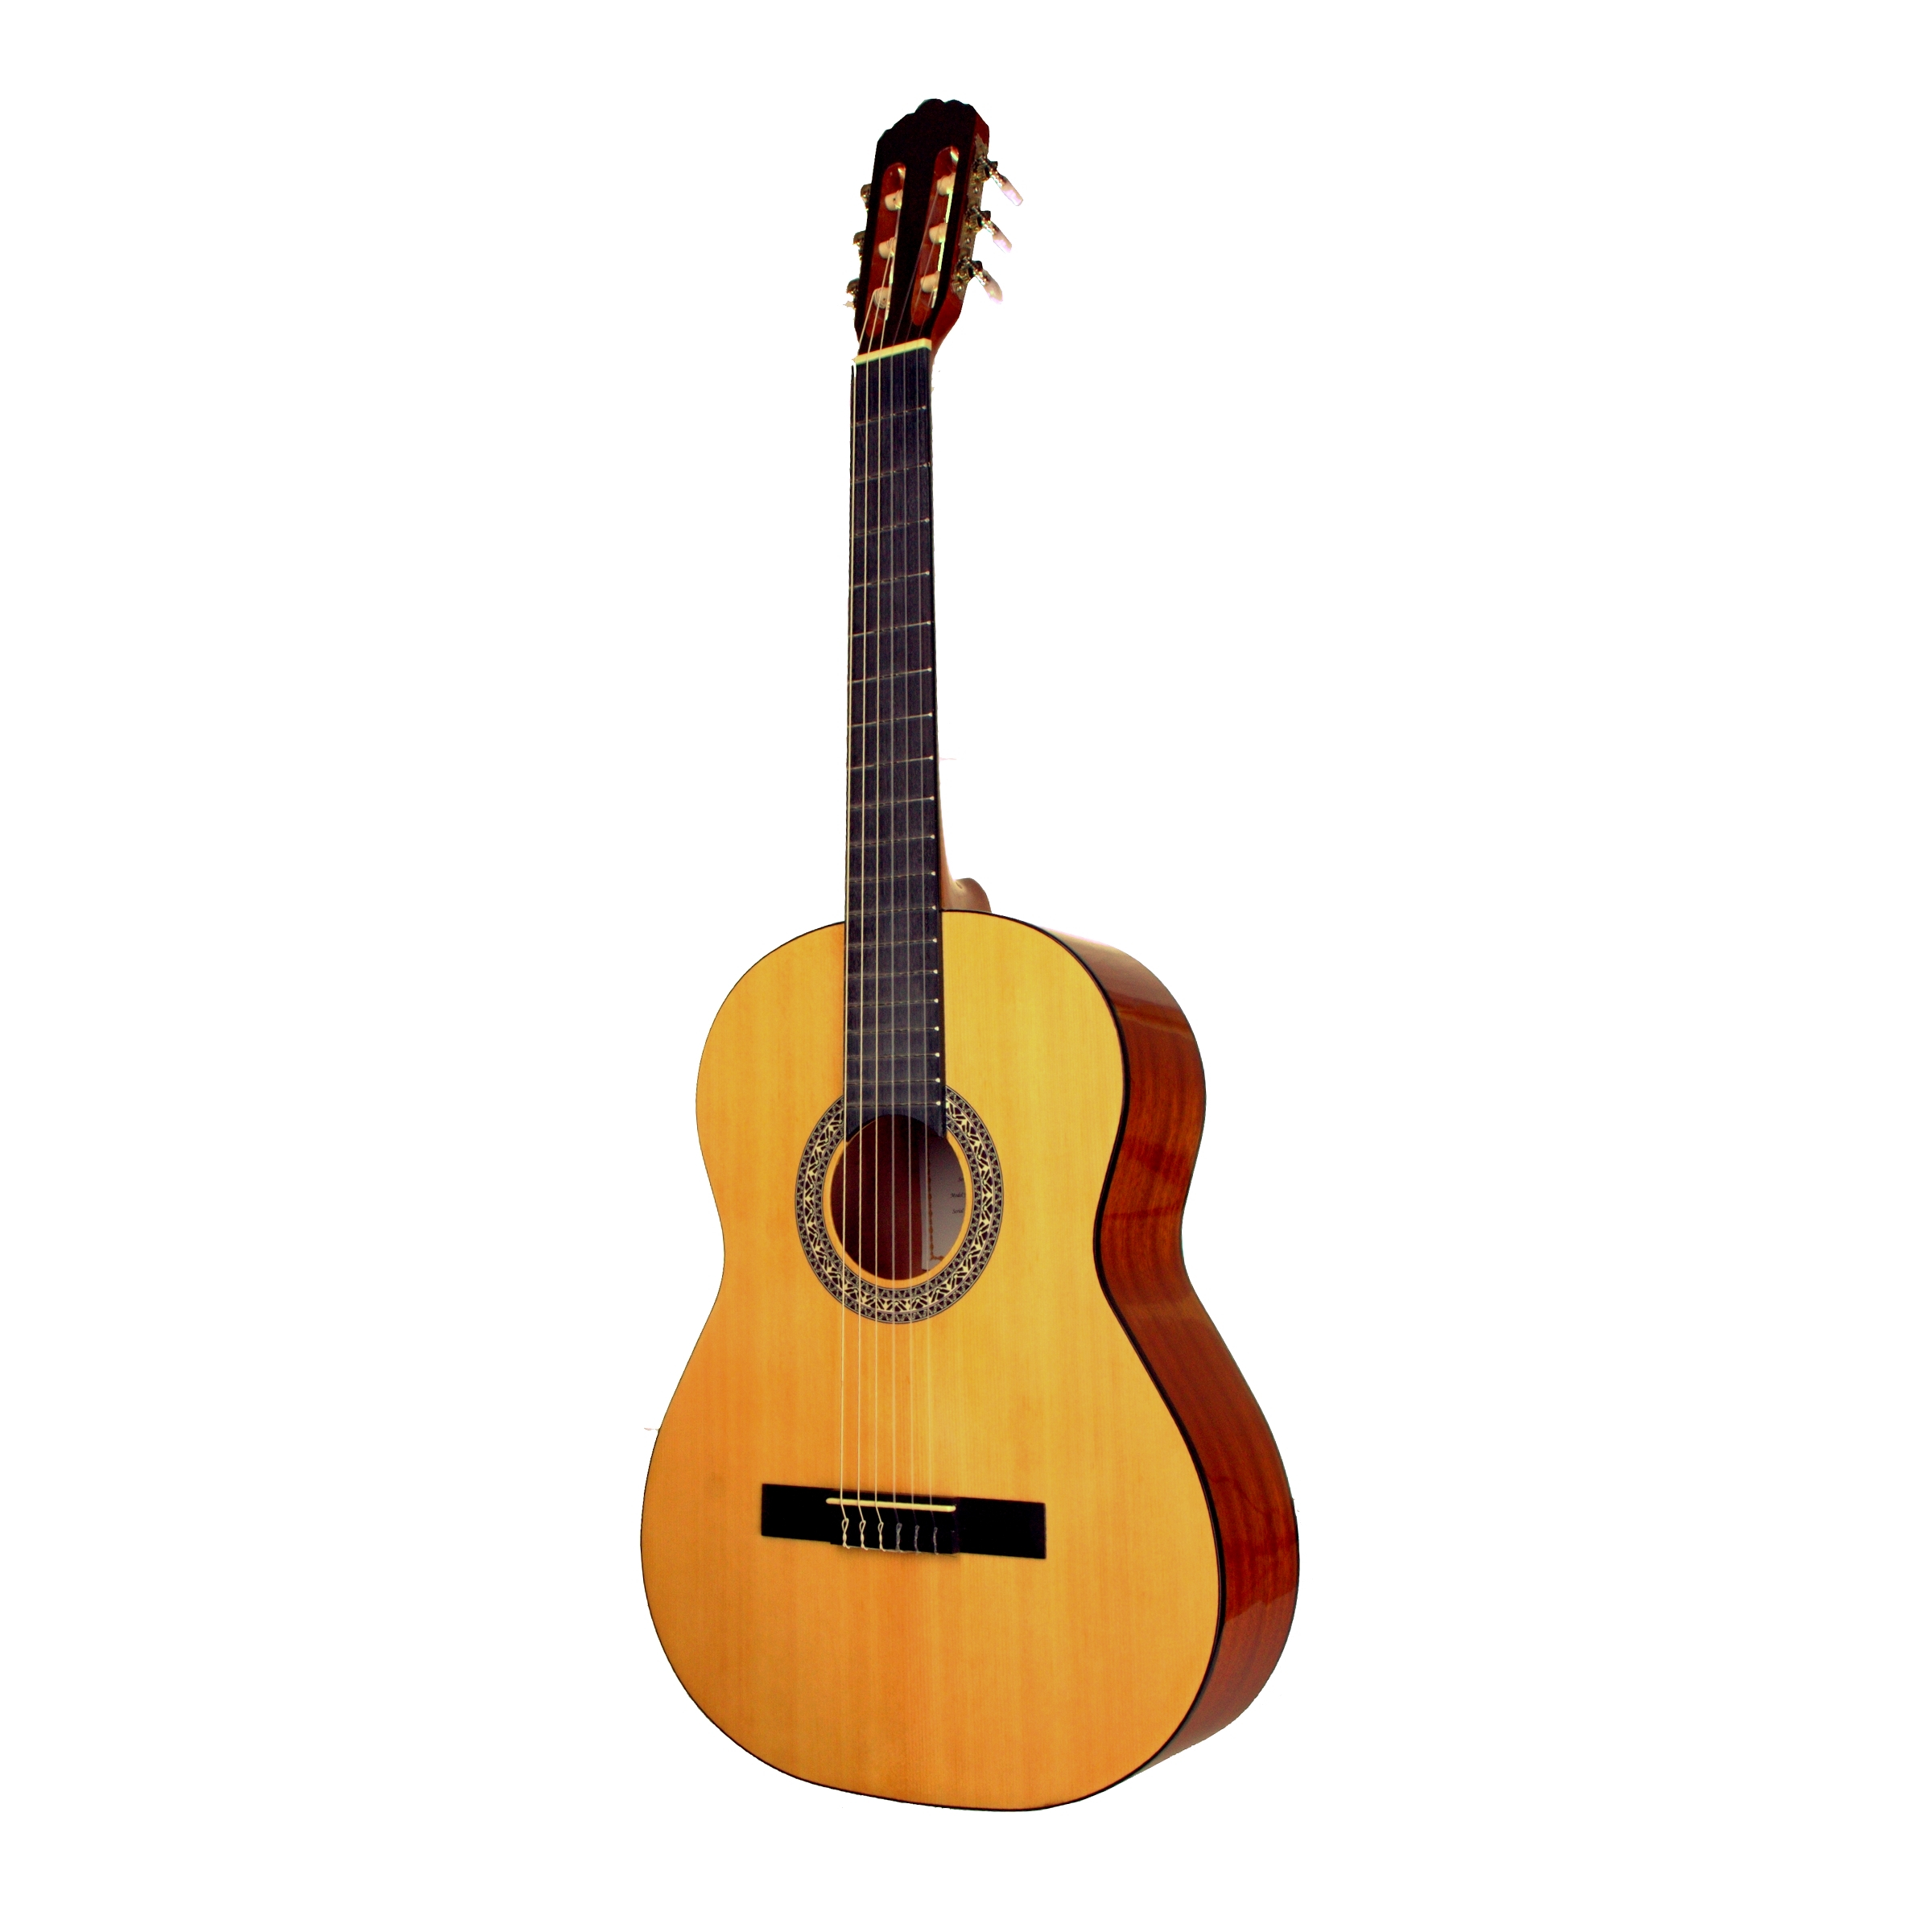 BARCELONA CG39 классическая гитара 4/4